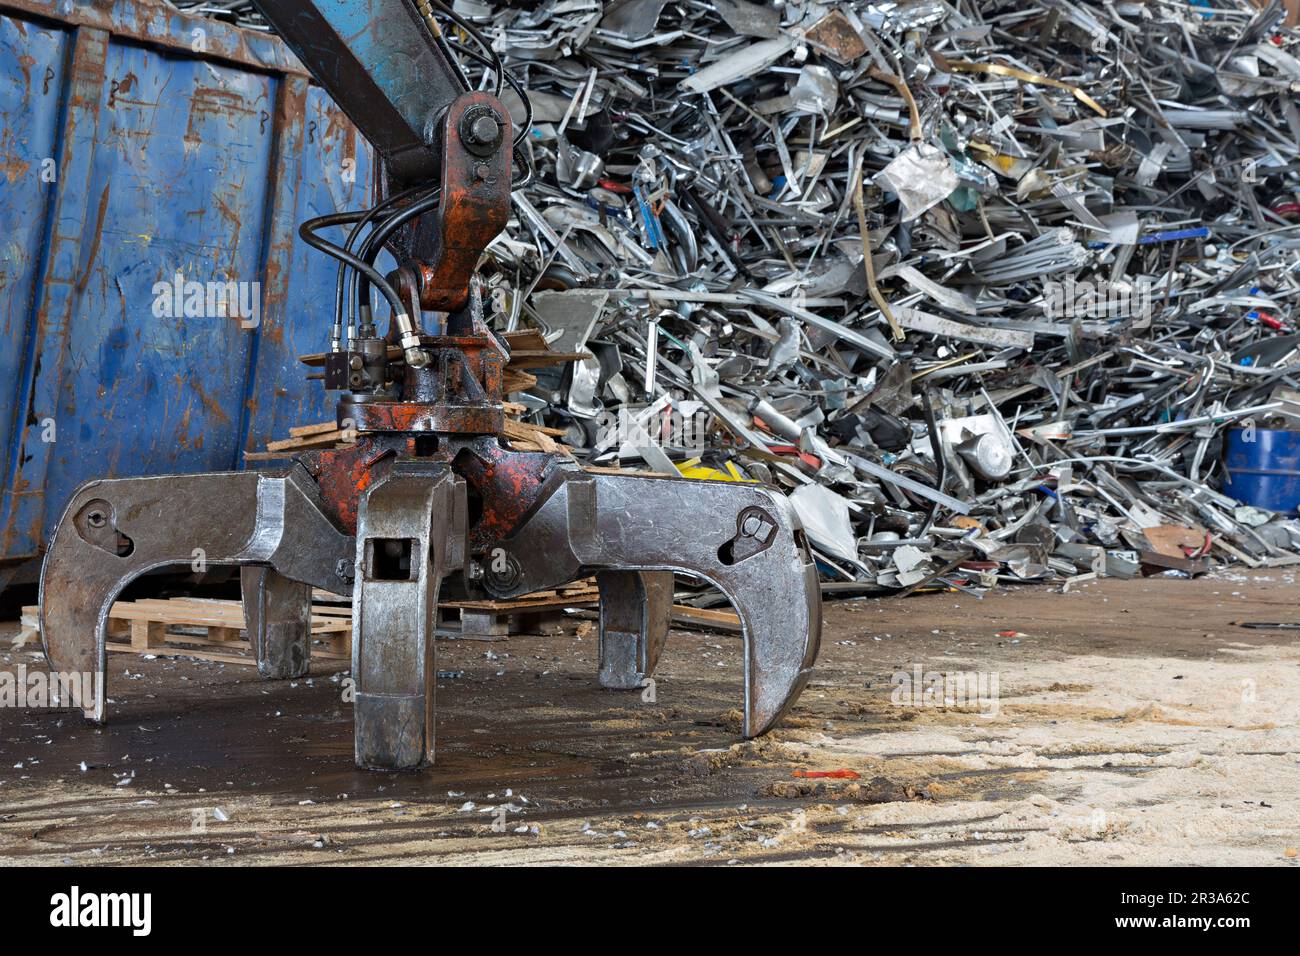 Scrap iron in a scrap yard Stock Photo